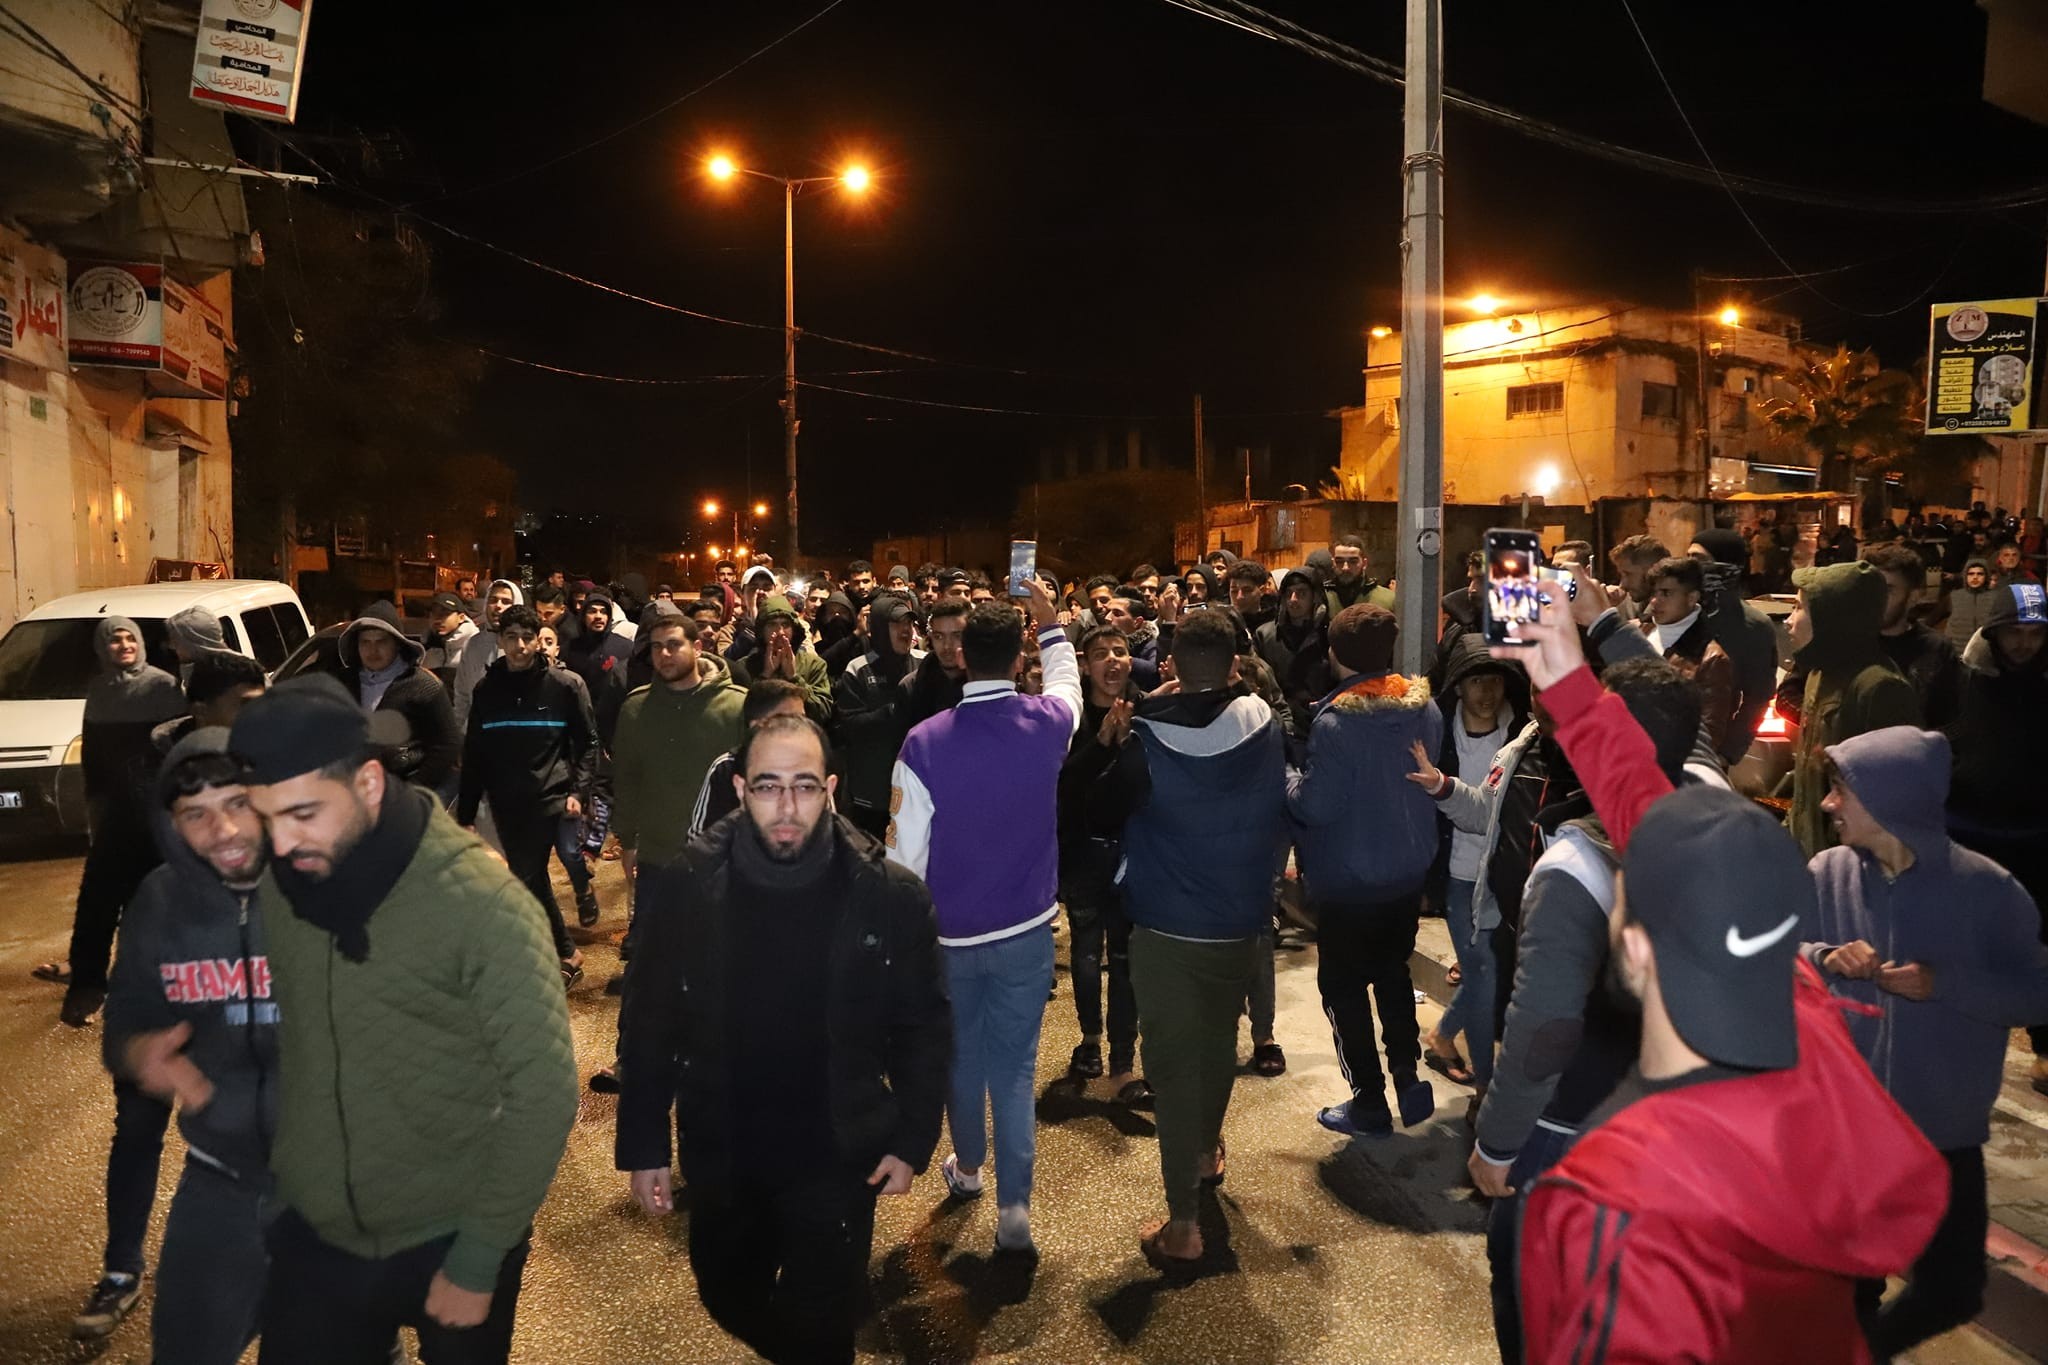 صور من احتجاجات أهالي بيت لاهيا على اقتطاع أراضي من المدينة لصالح بلديات أخرى.. تصوير (موسى سالم) 111.jpg